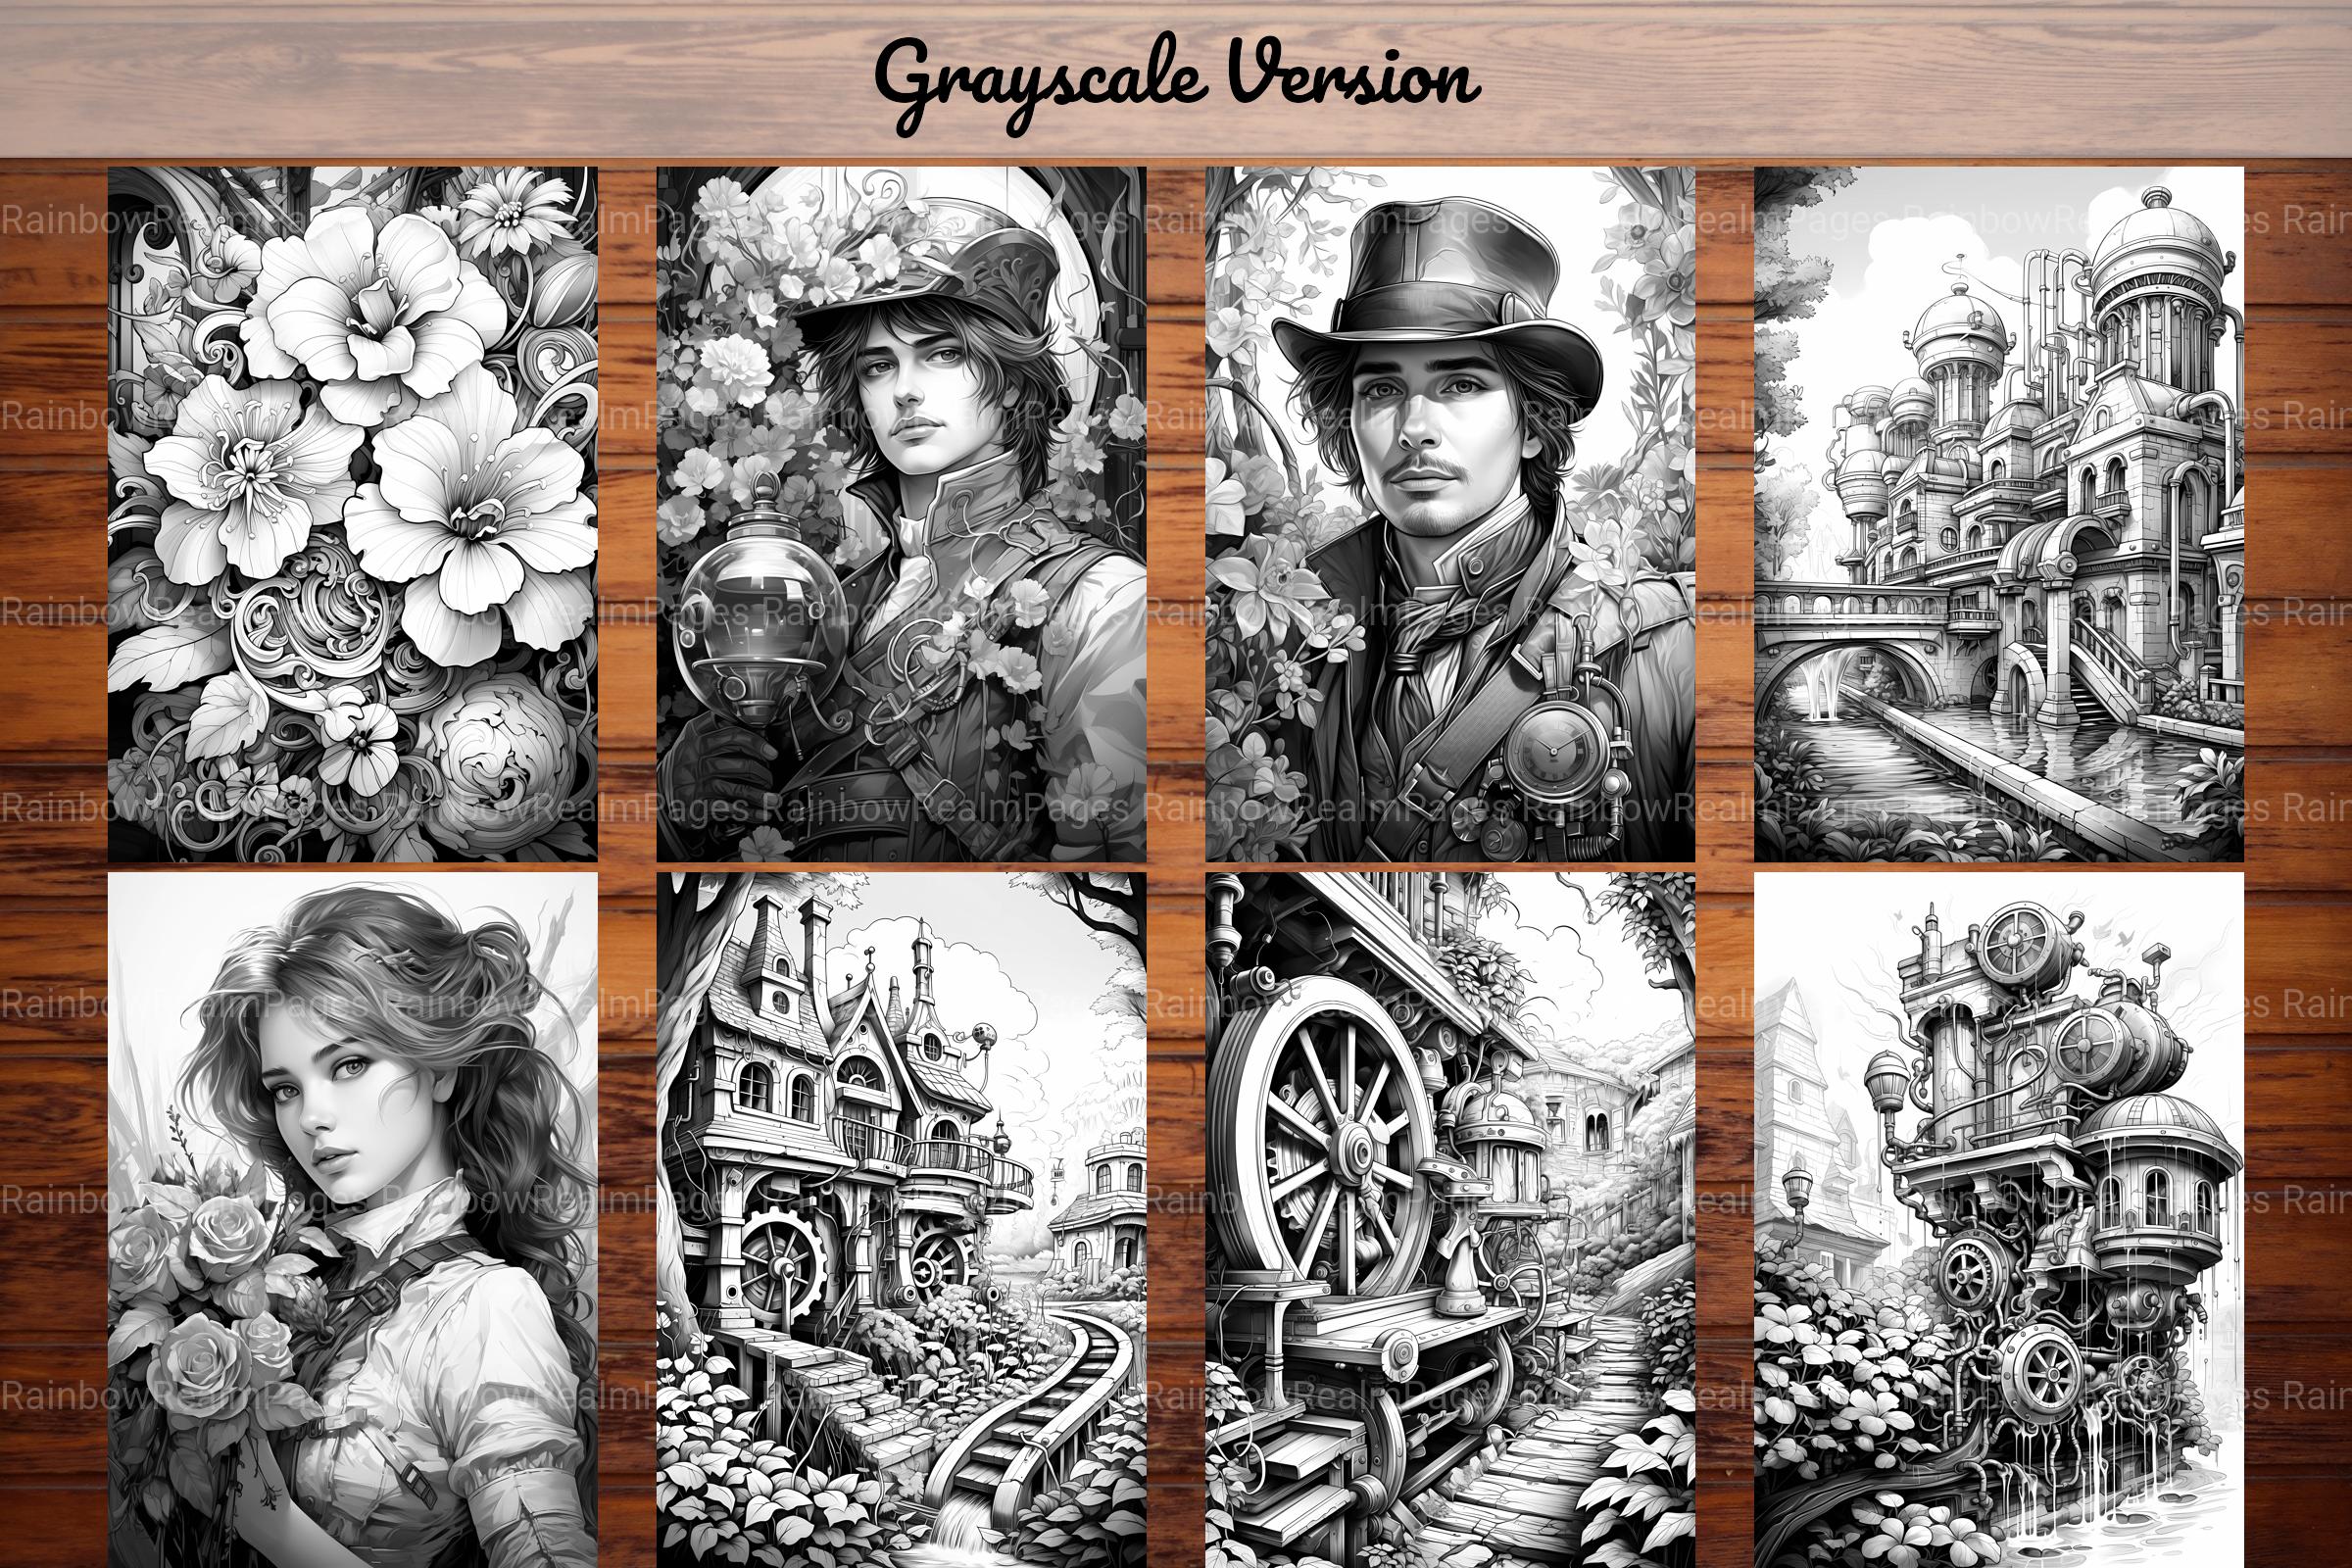 Steampunk Garden Coloring Books - CraftNest